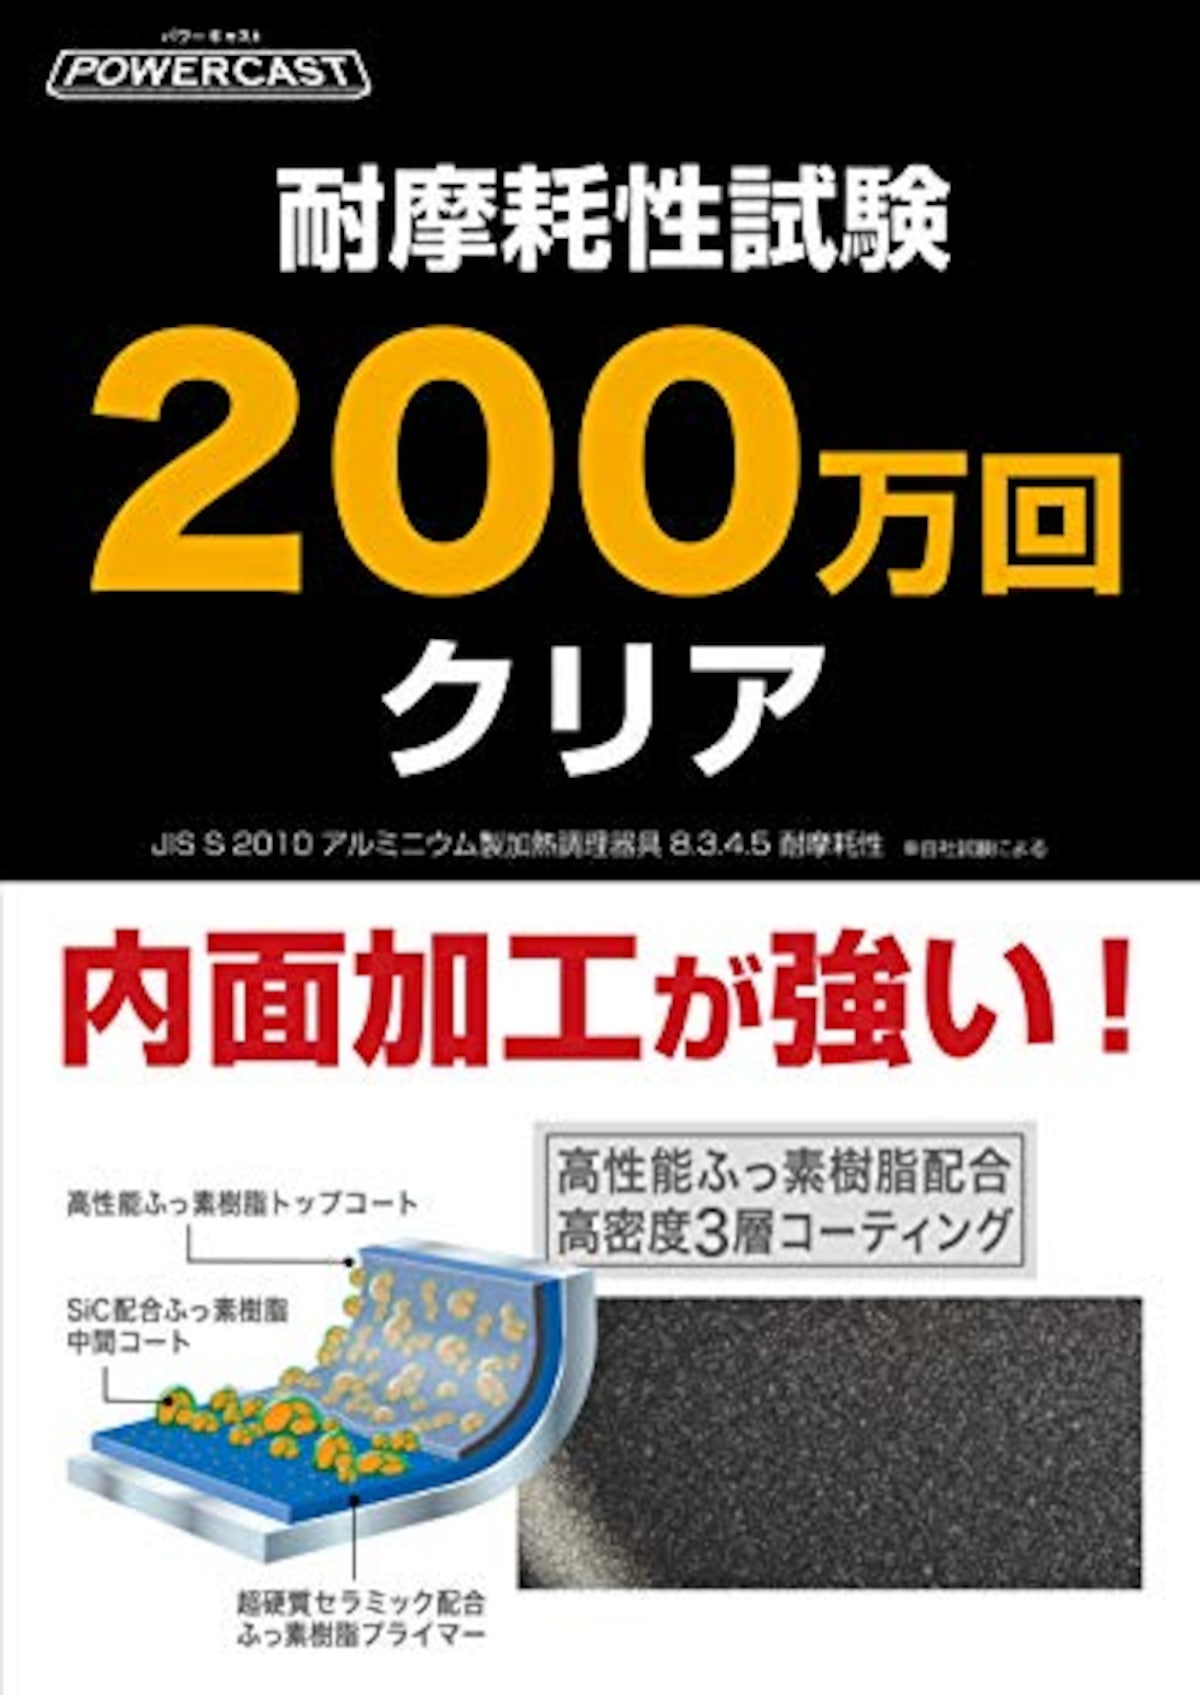  TKGコーポレーション 業務用 フライパン 30㎝ パワーキャスト アルミニウム合金 日本製 AFL1606画像7 